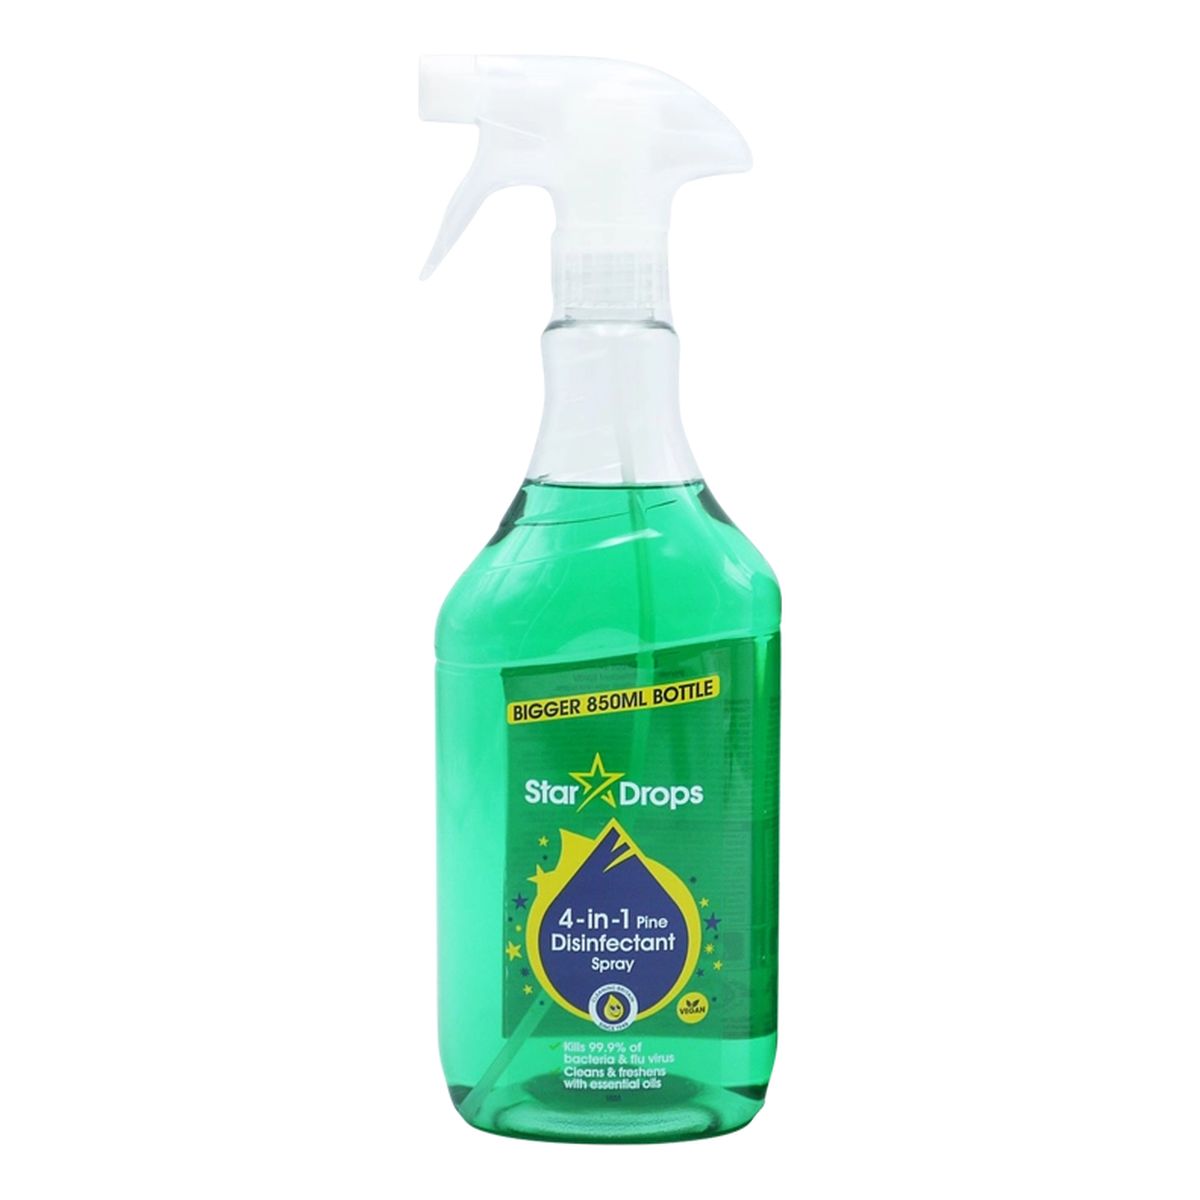 Star Drops Pine Disinfectant Spray dezynfekujący 4in1 850ml